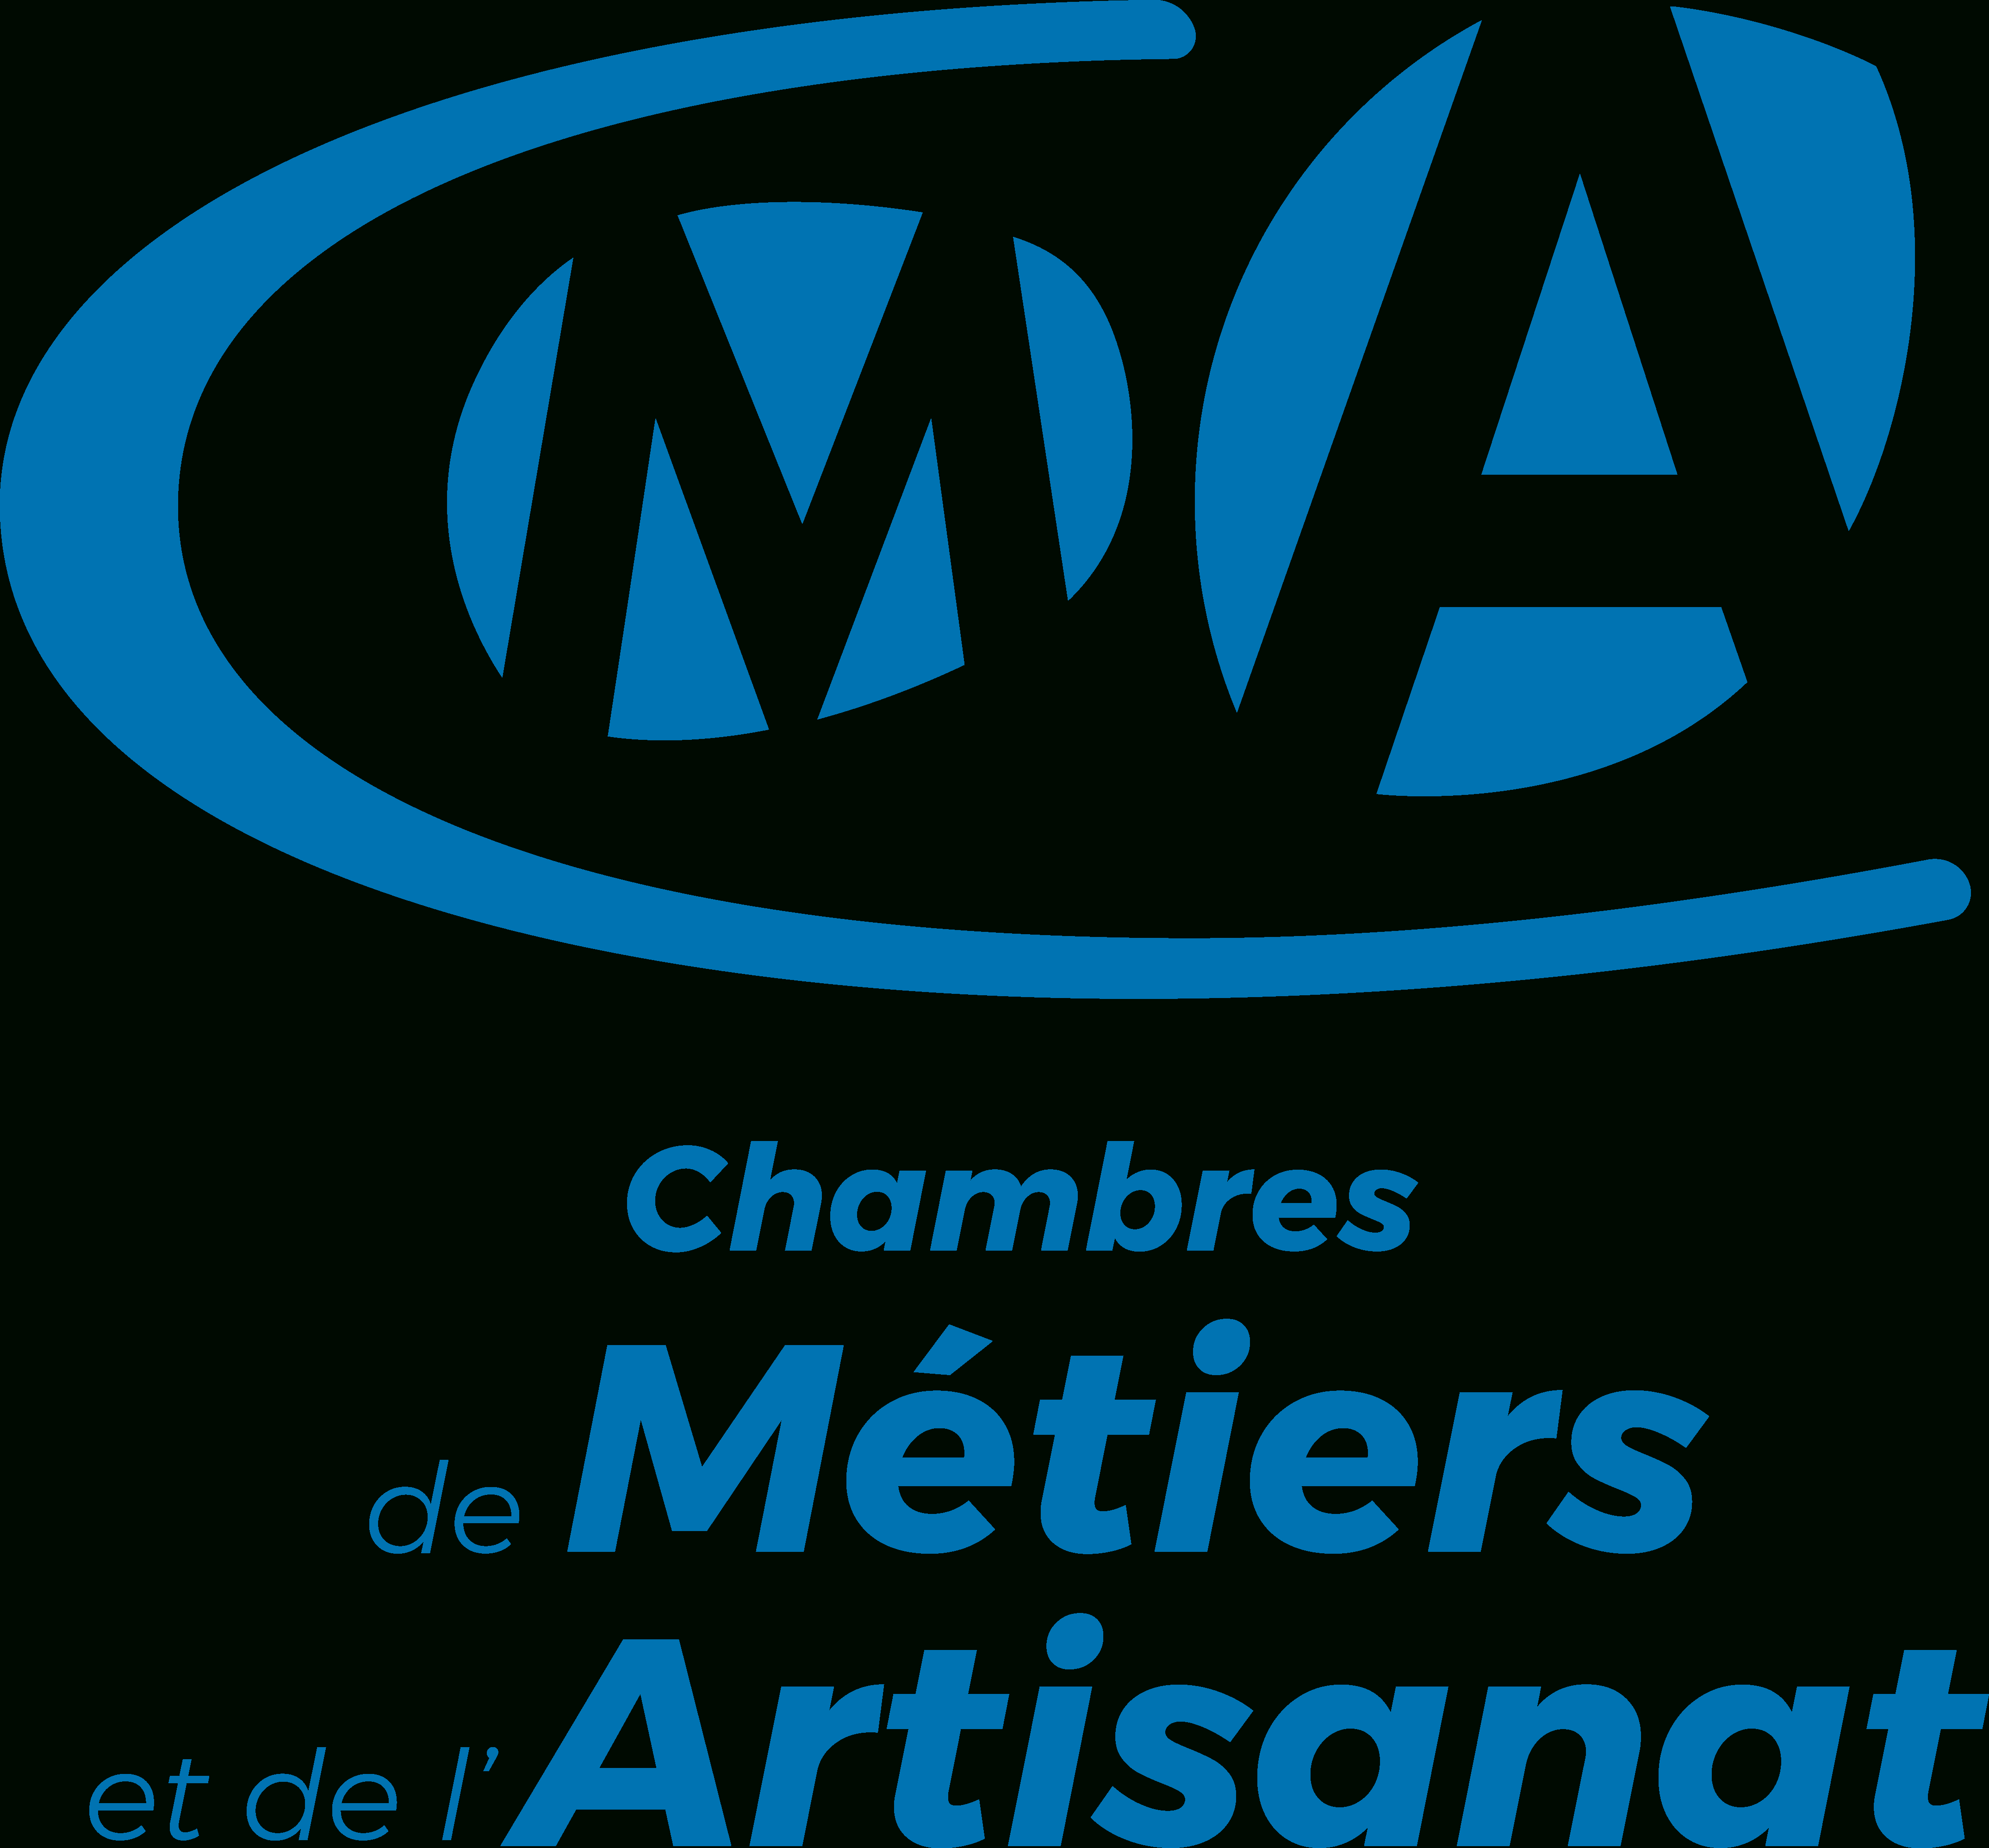 Offres D'alternance: Emplois Et Stages En Alternance avec Chambre Des Métiers Montpellier